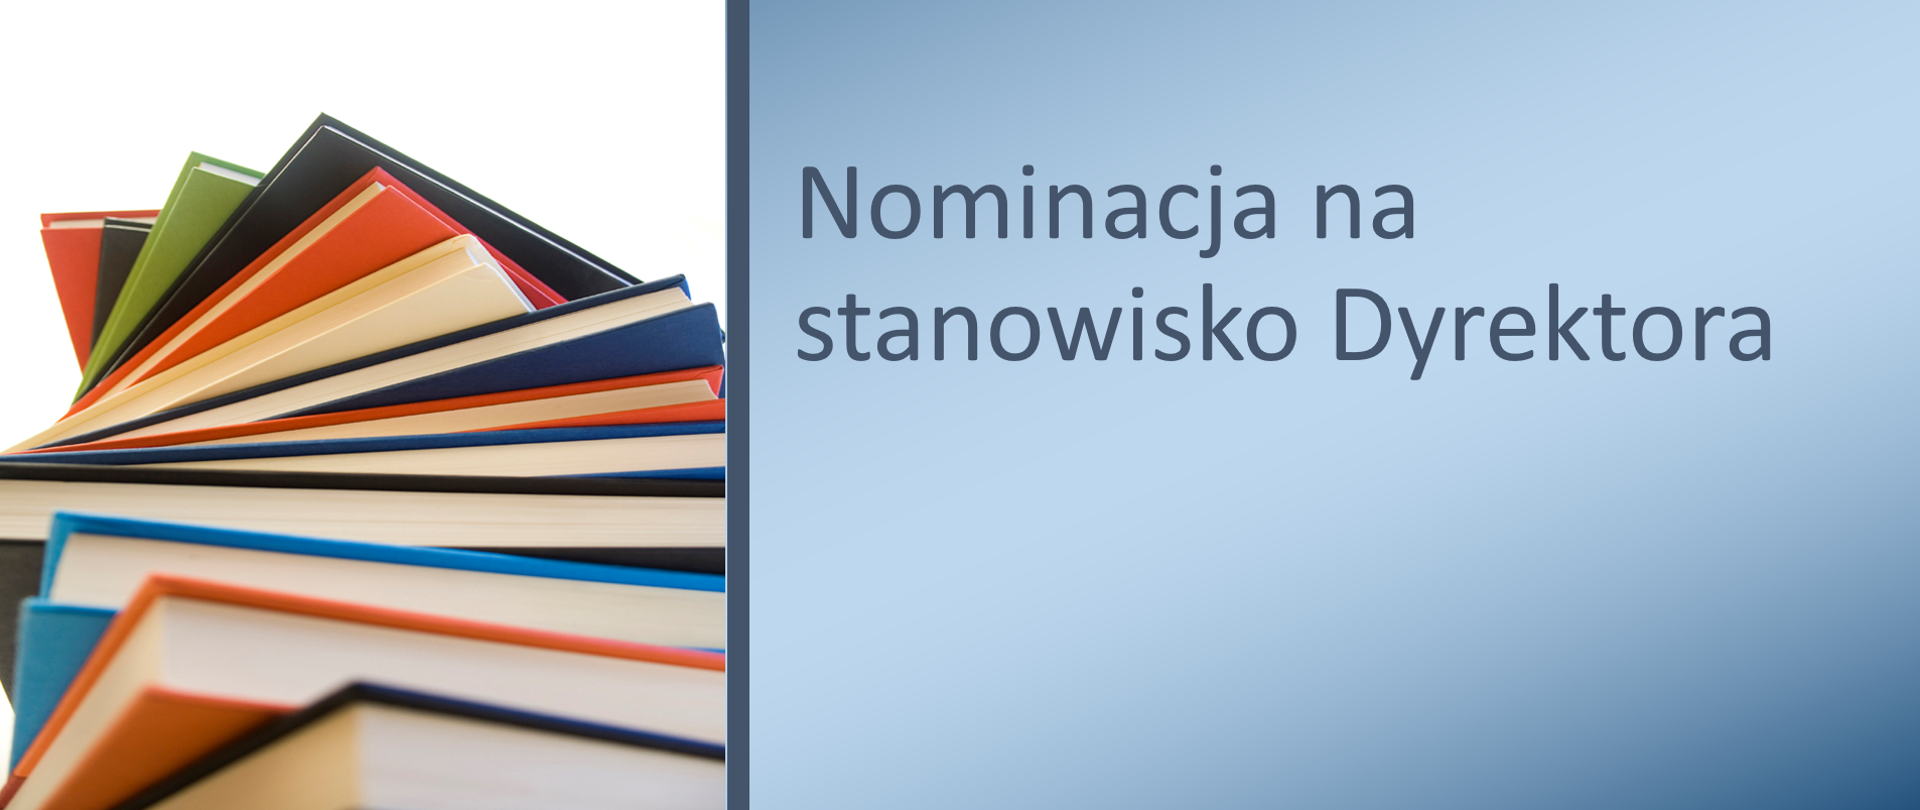 Plakat nominacja na stanowisko Dyrektora na niebieskim tle, po lewej stos książek